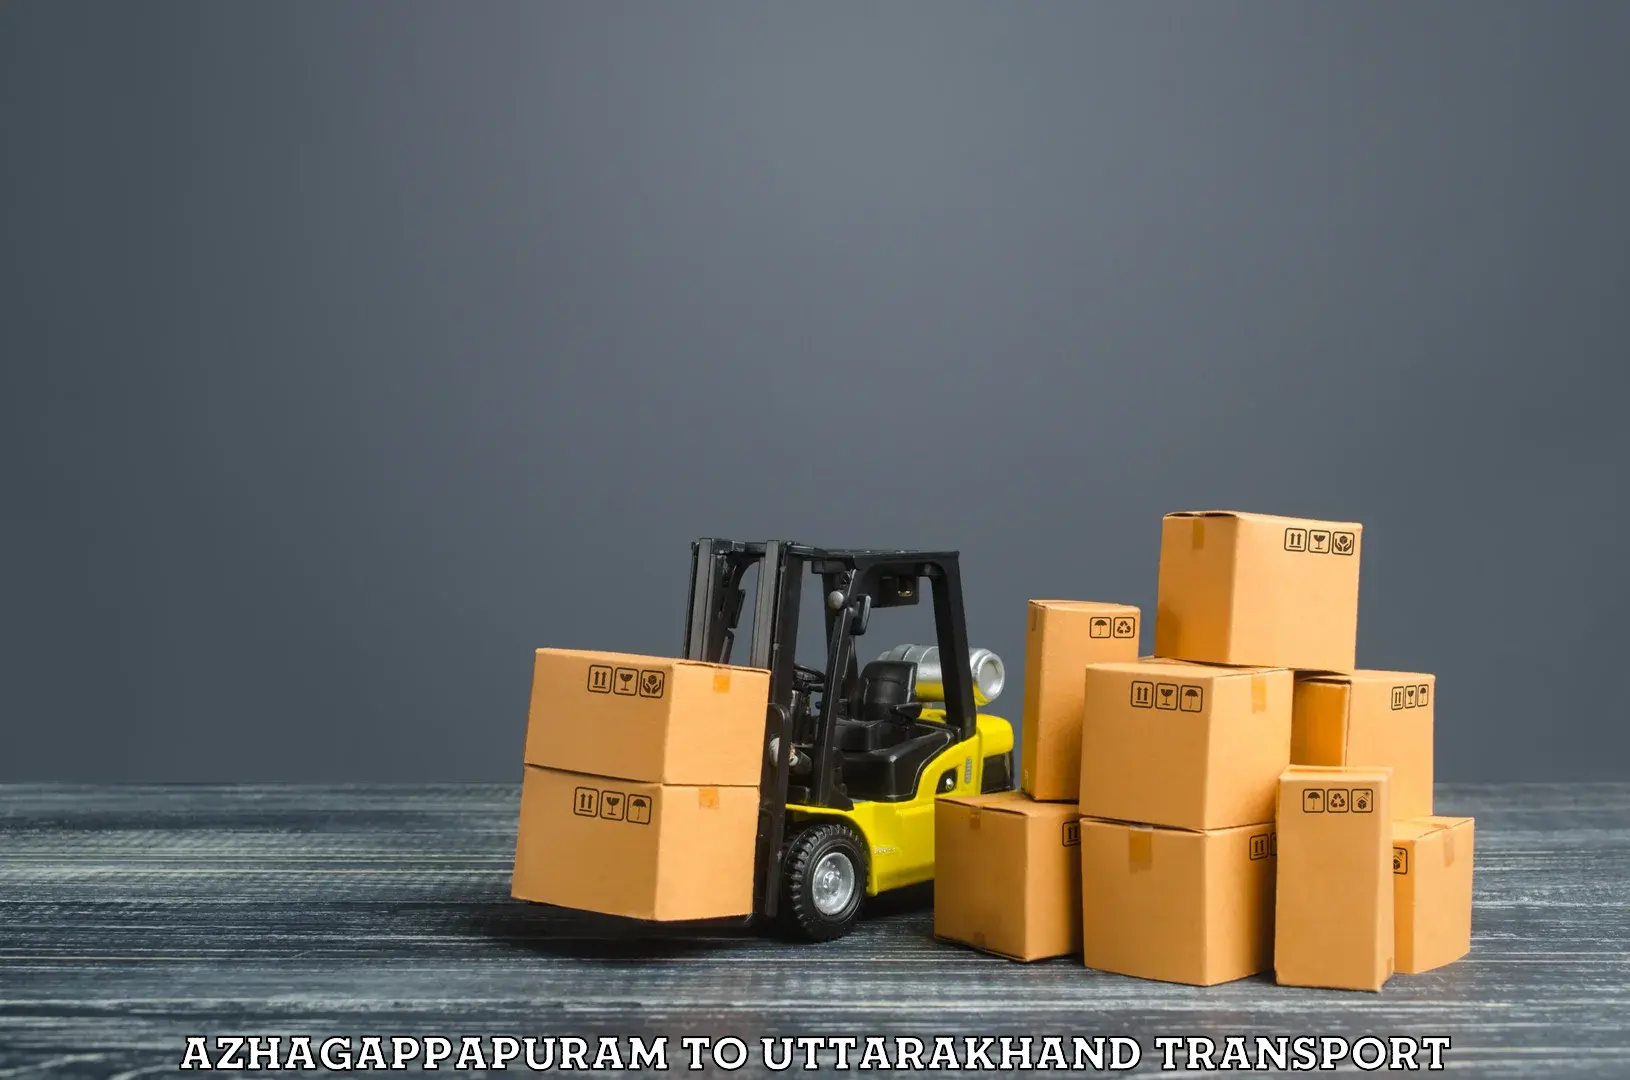 Daily parcel service transport Azhagappapuram to Chamoli